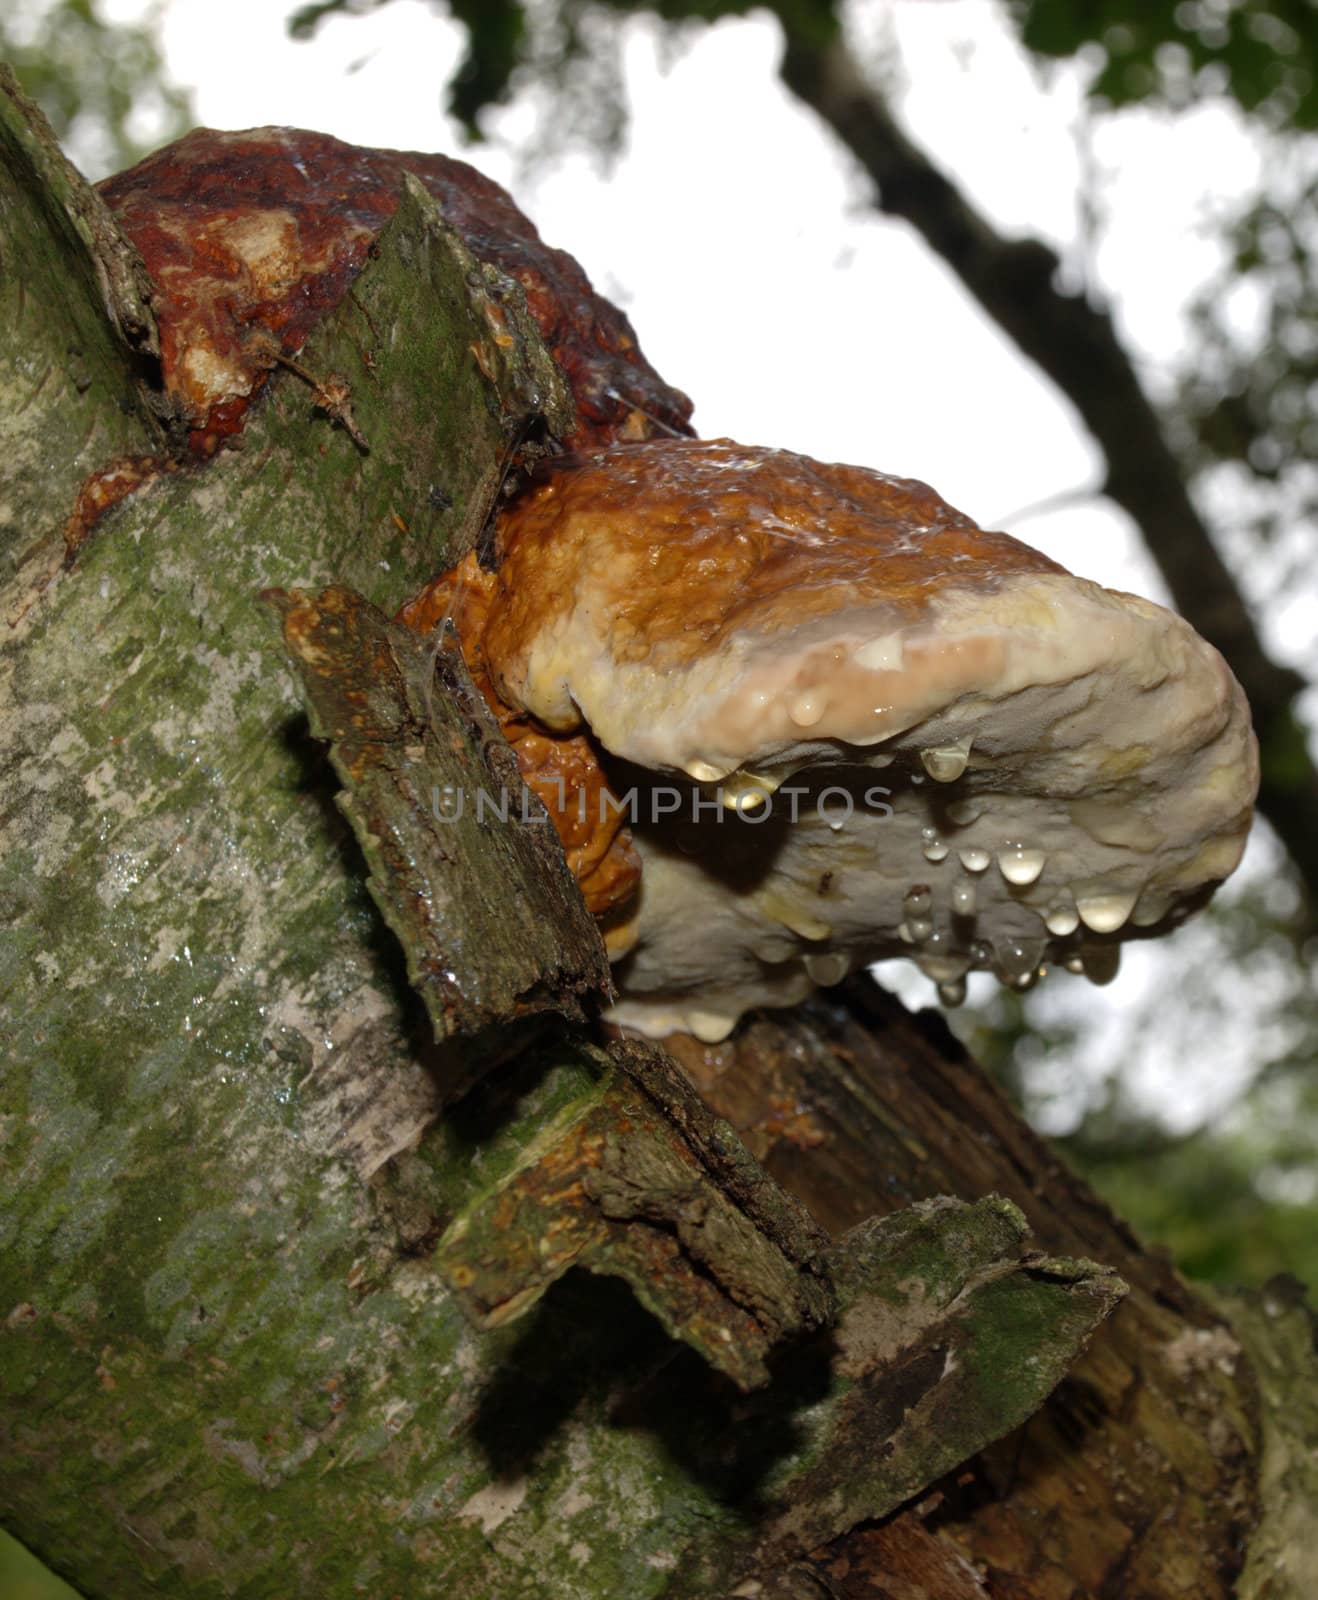 dewy wood-decaying mushroom by renales